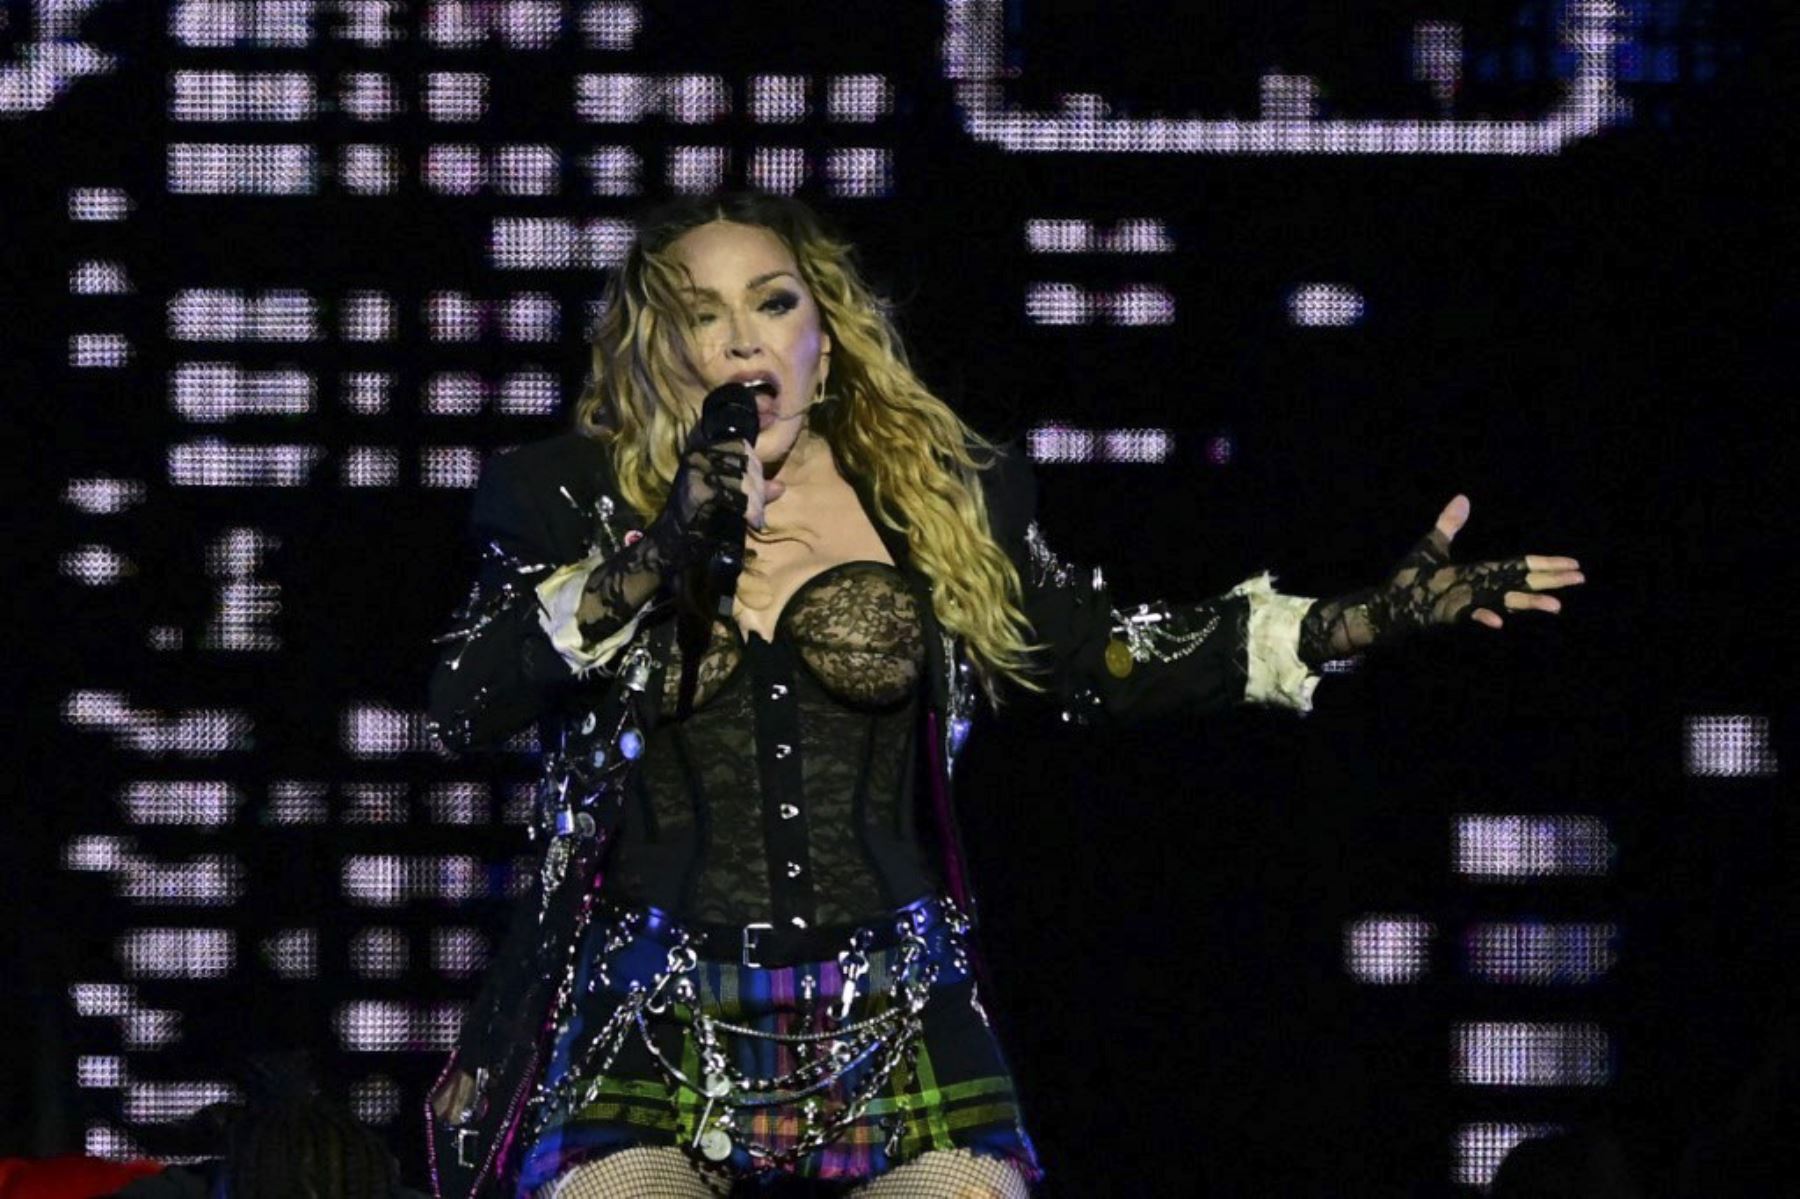 La estrella del pop estadounidense Madonna actúa en el escenario durante un concierto gratuito en la playa de Copacabana en Río de Janeiro, Brasil, el 4 de mayo de 2024. Madonna finalizó su "The Celebration Tour" con una actuación a la que asistieron alrededor de 1,6 millones de entusiastas fans. Foto: AFP